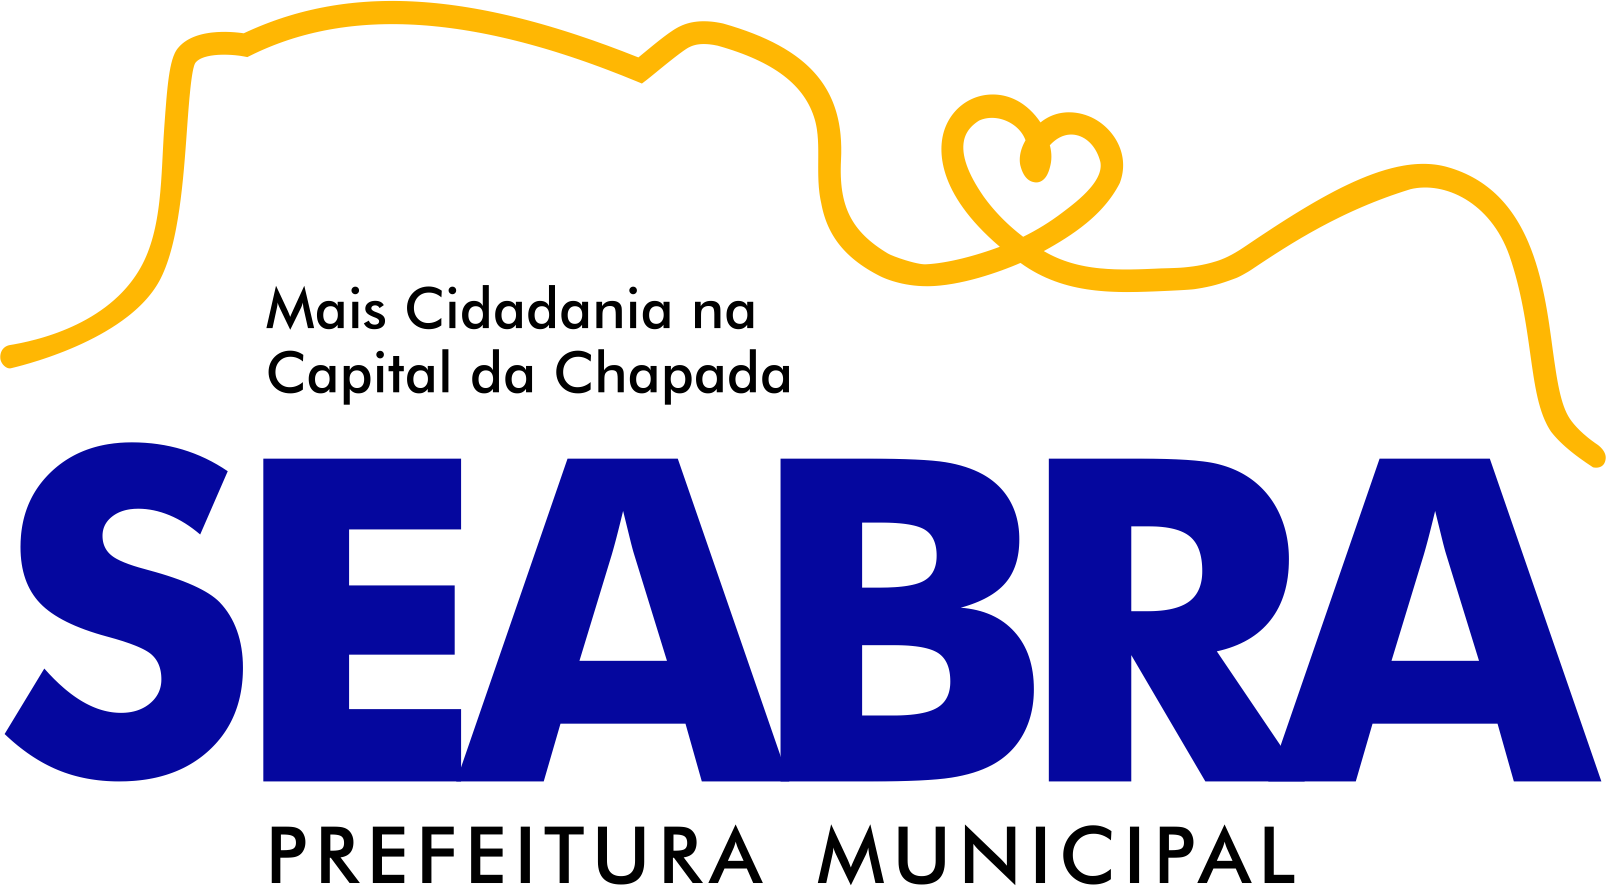 Logomarca da Prefeitura de Seabra-BA